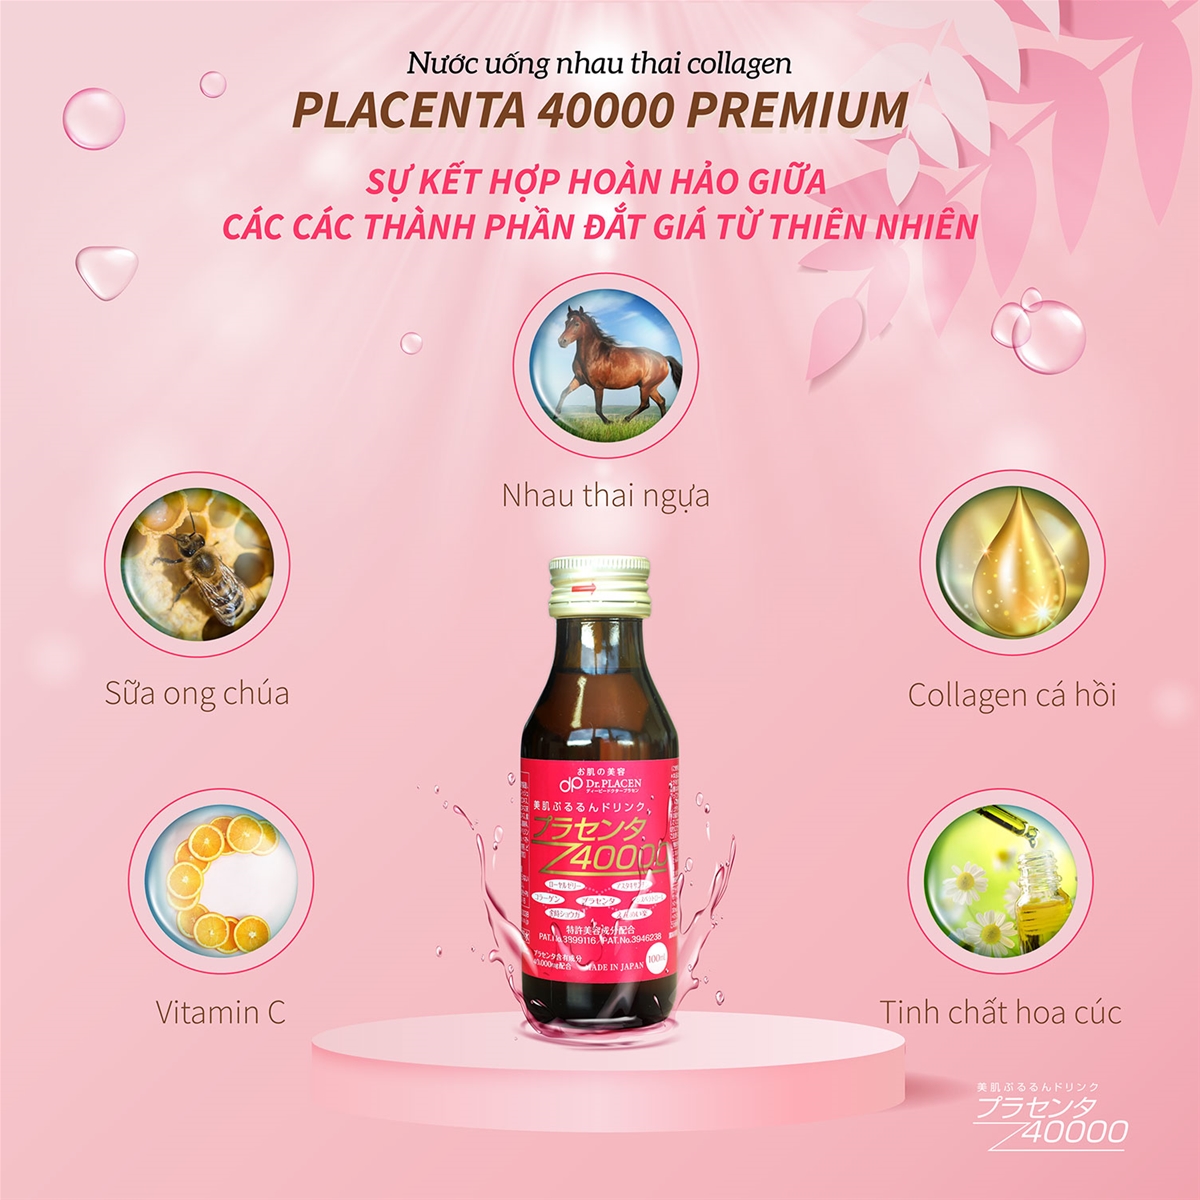 Collagen Placenta 40000 là sản phẩm được rất nhiều khách hàng tin tưởng lựa chọn. 